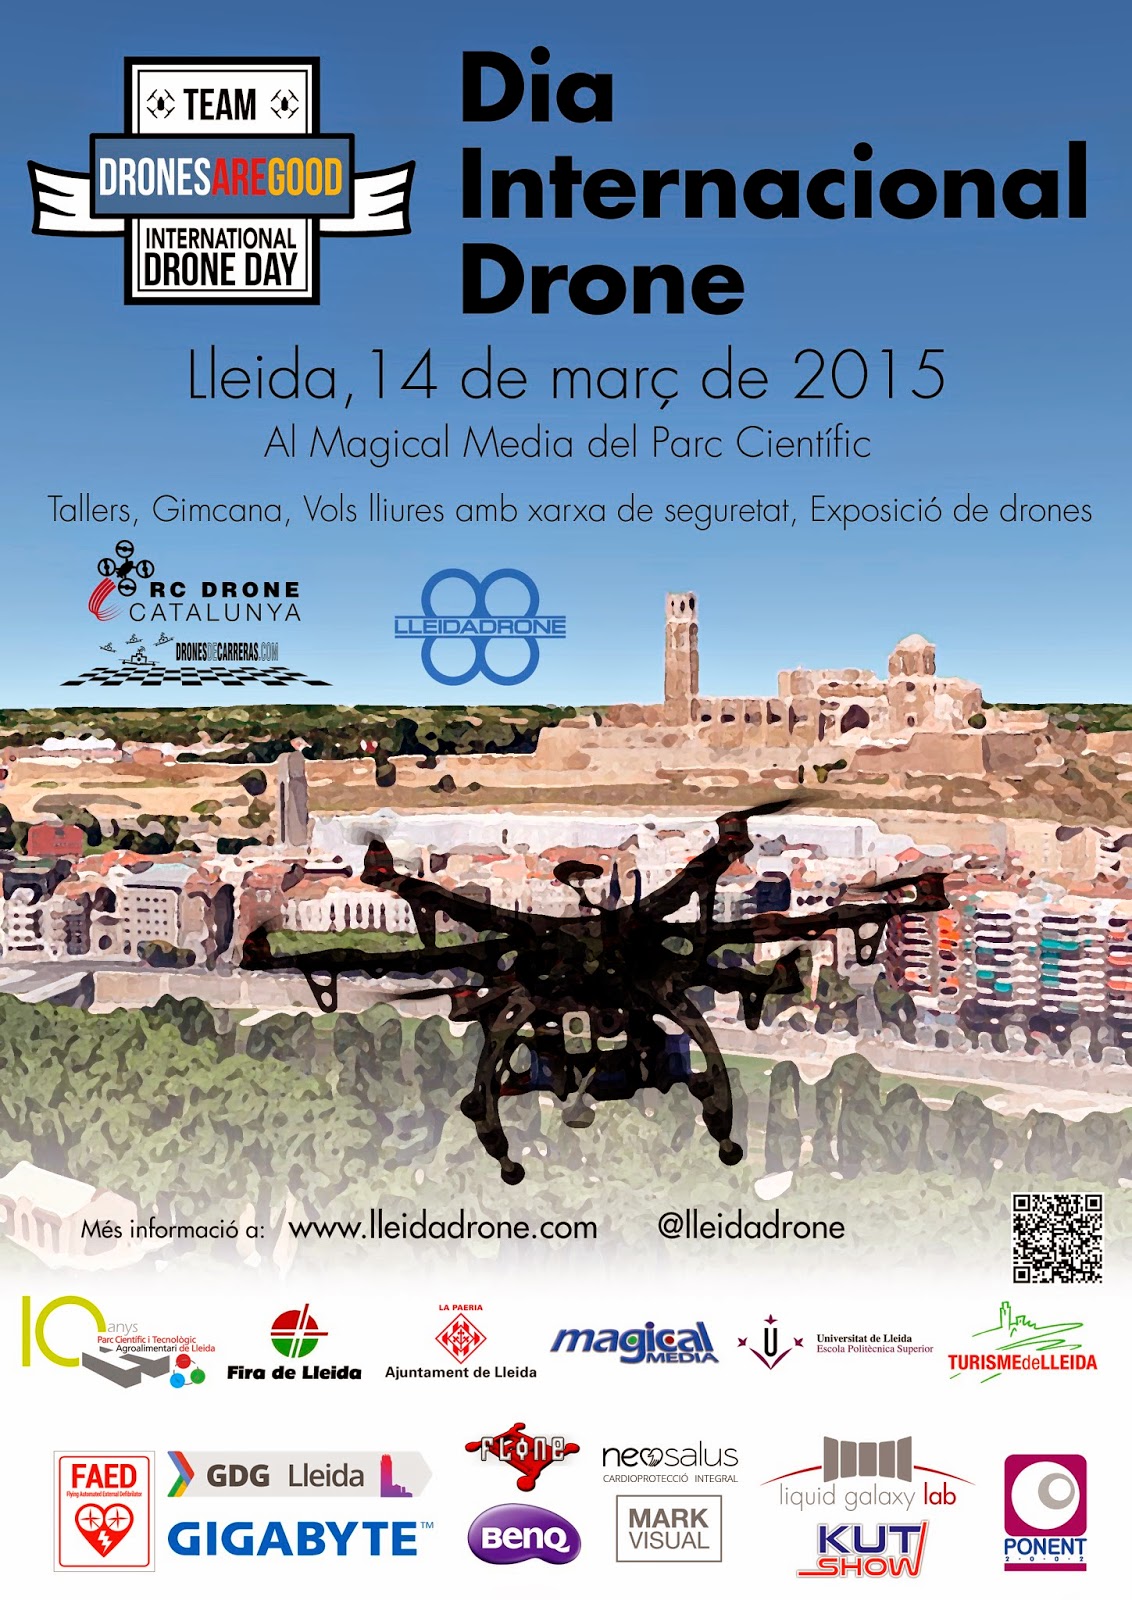 Resérvate el 14 de marzo, y ven al Dia Internacional de los Drone junto a RC/Drone/VANT Catalunya 